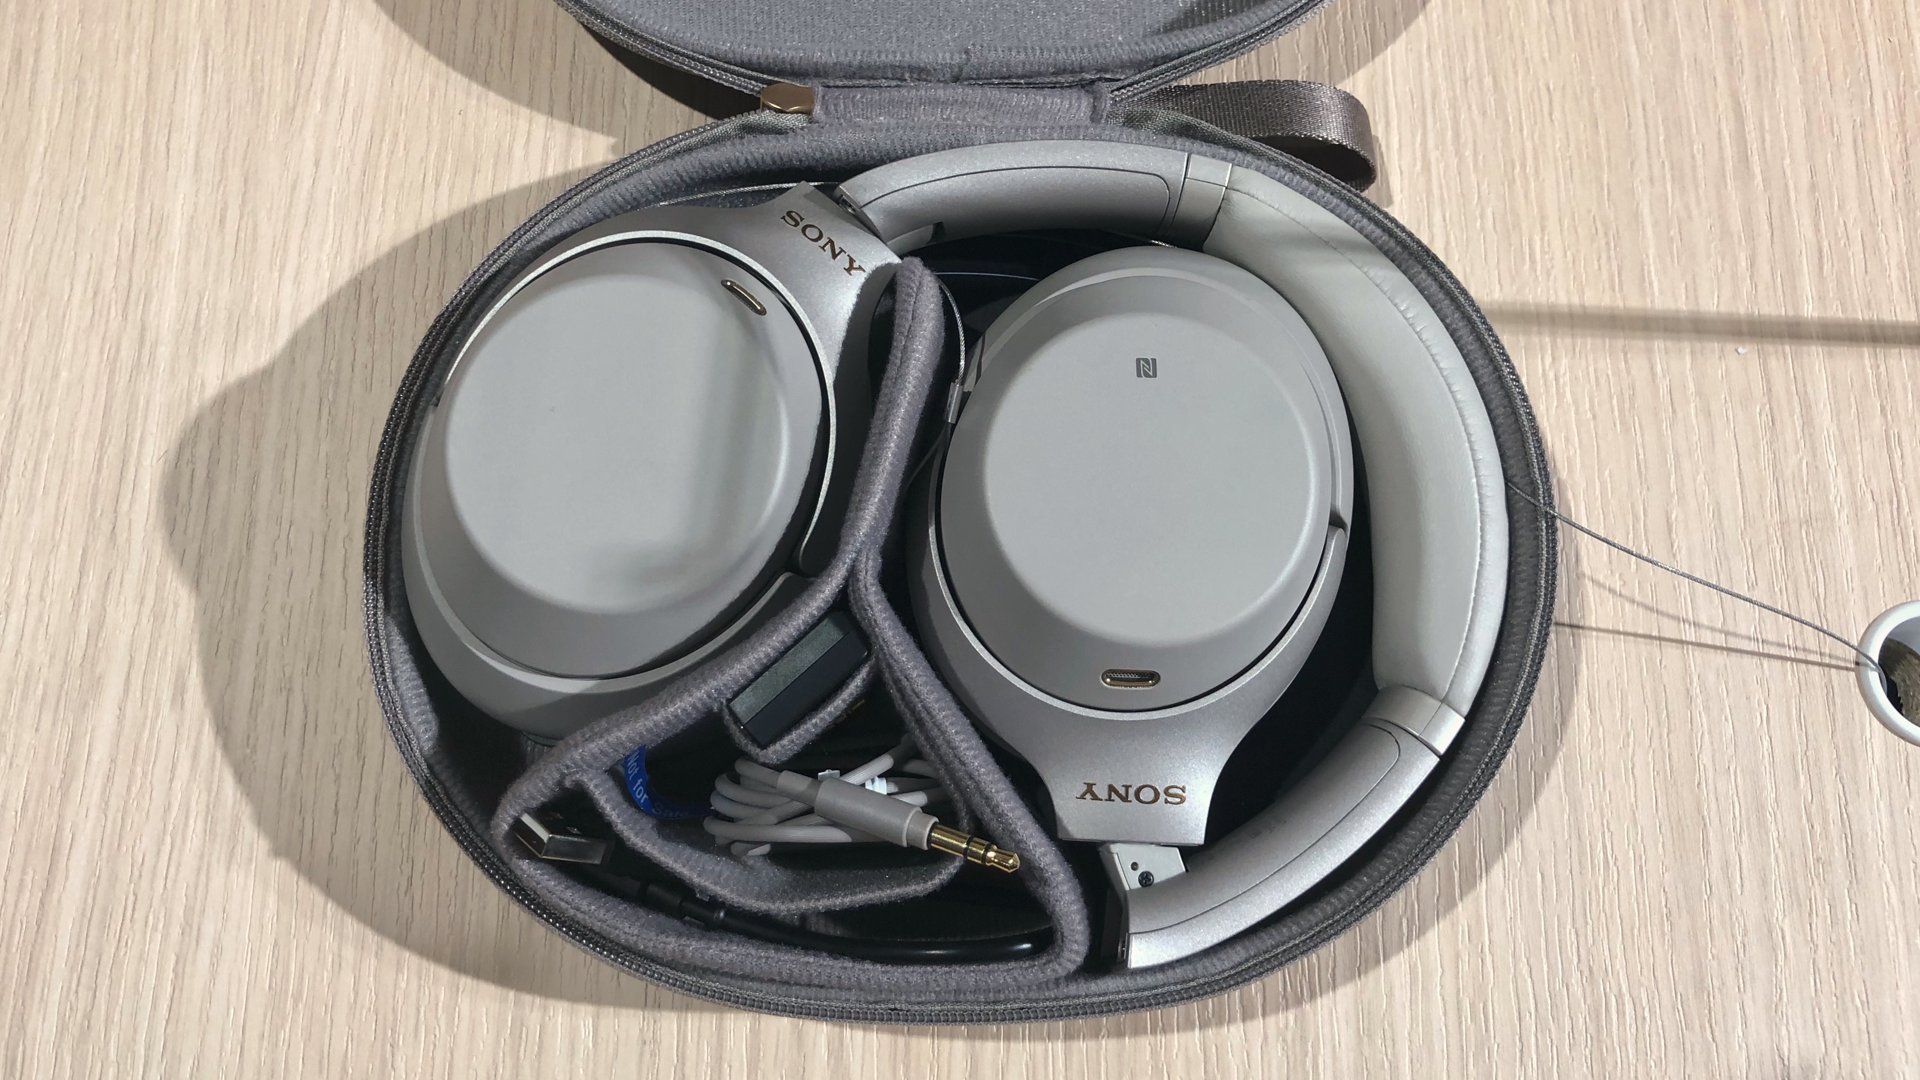 Sony WH-1000XM3 trådlösa hörlurar